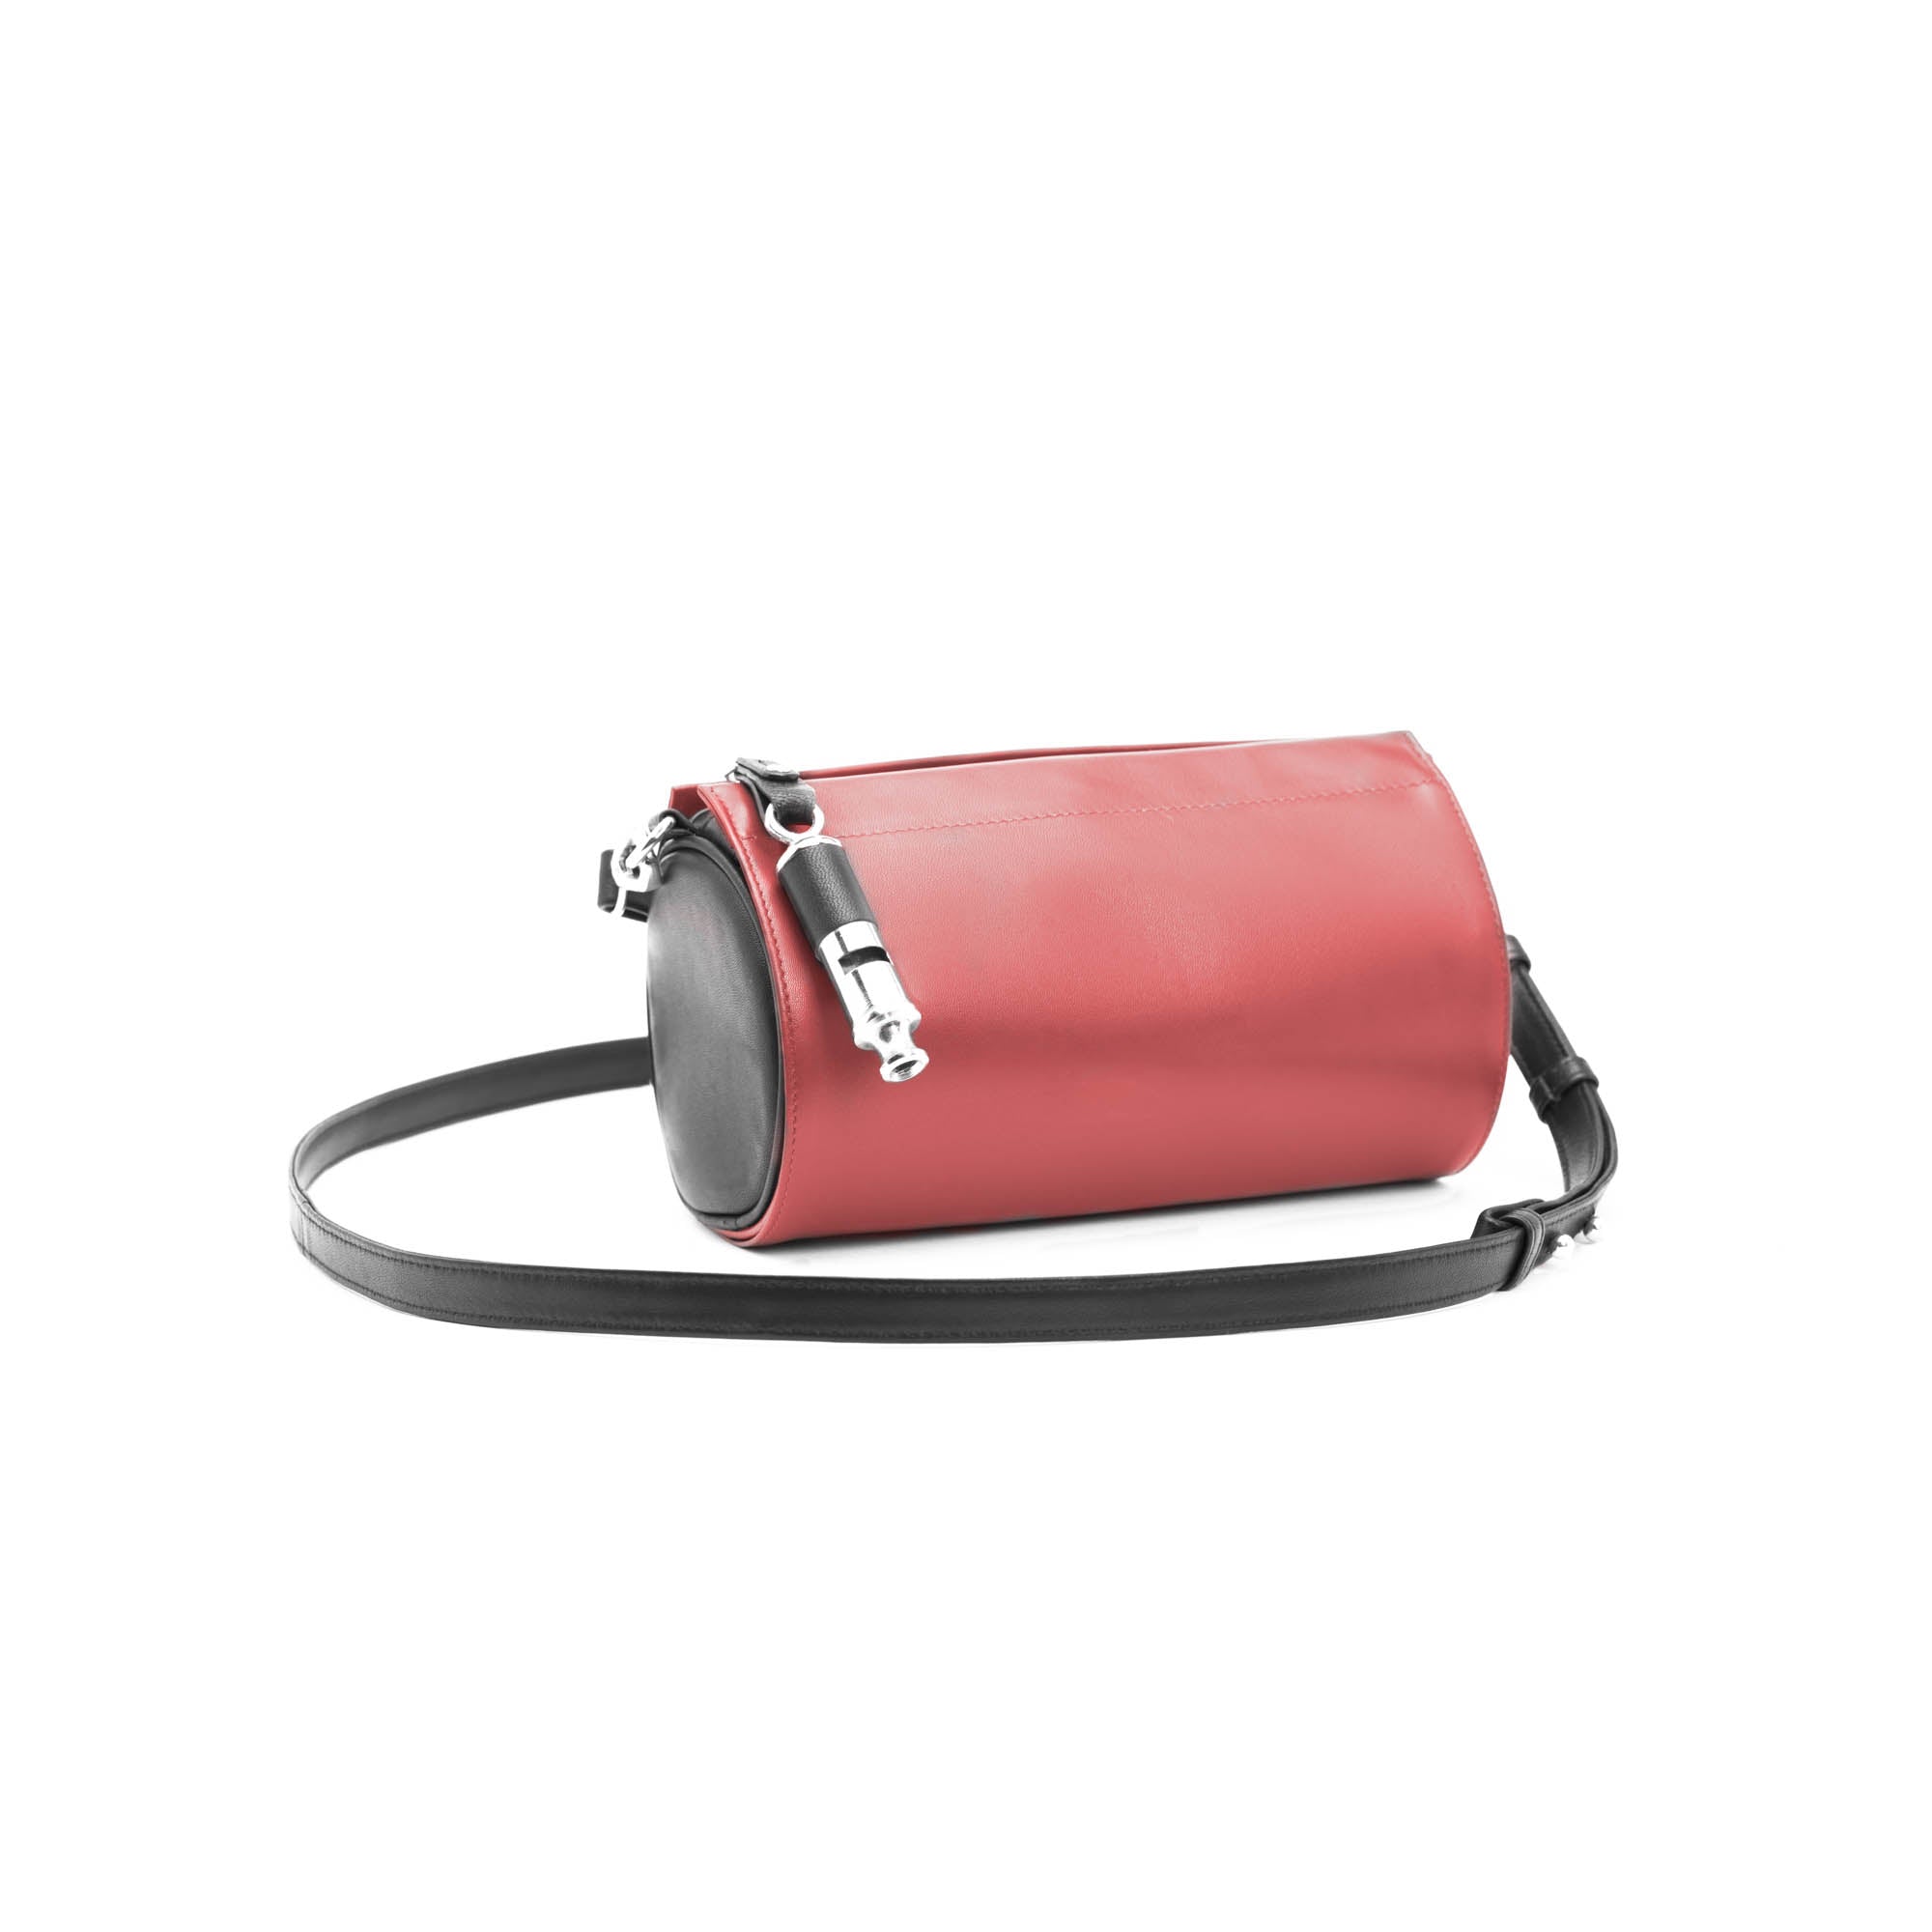 Gamechanger Barrel Solid Black Lambskin 5-In-1 Convertible Handbag